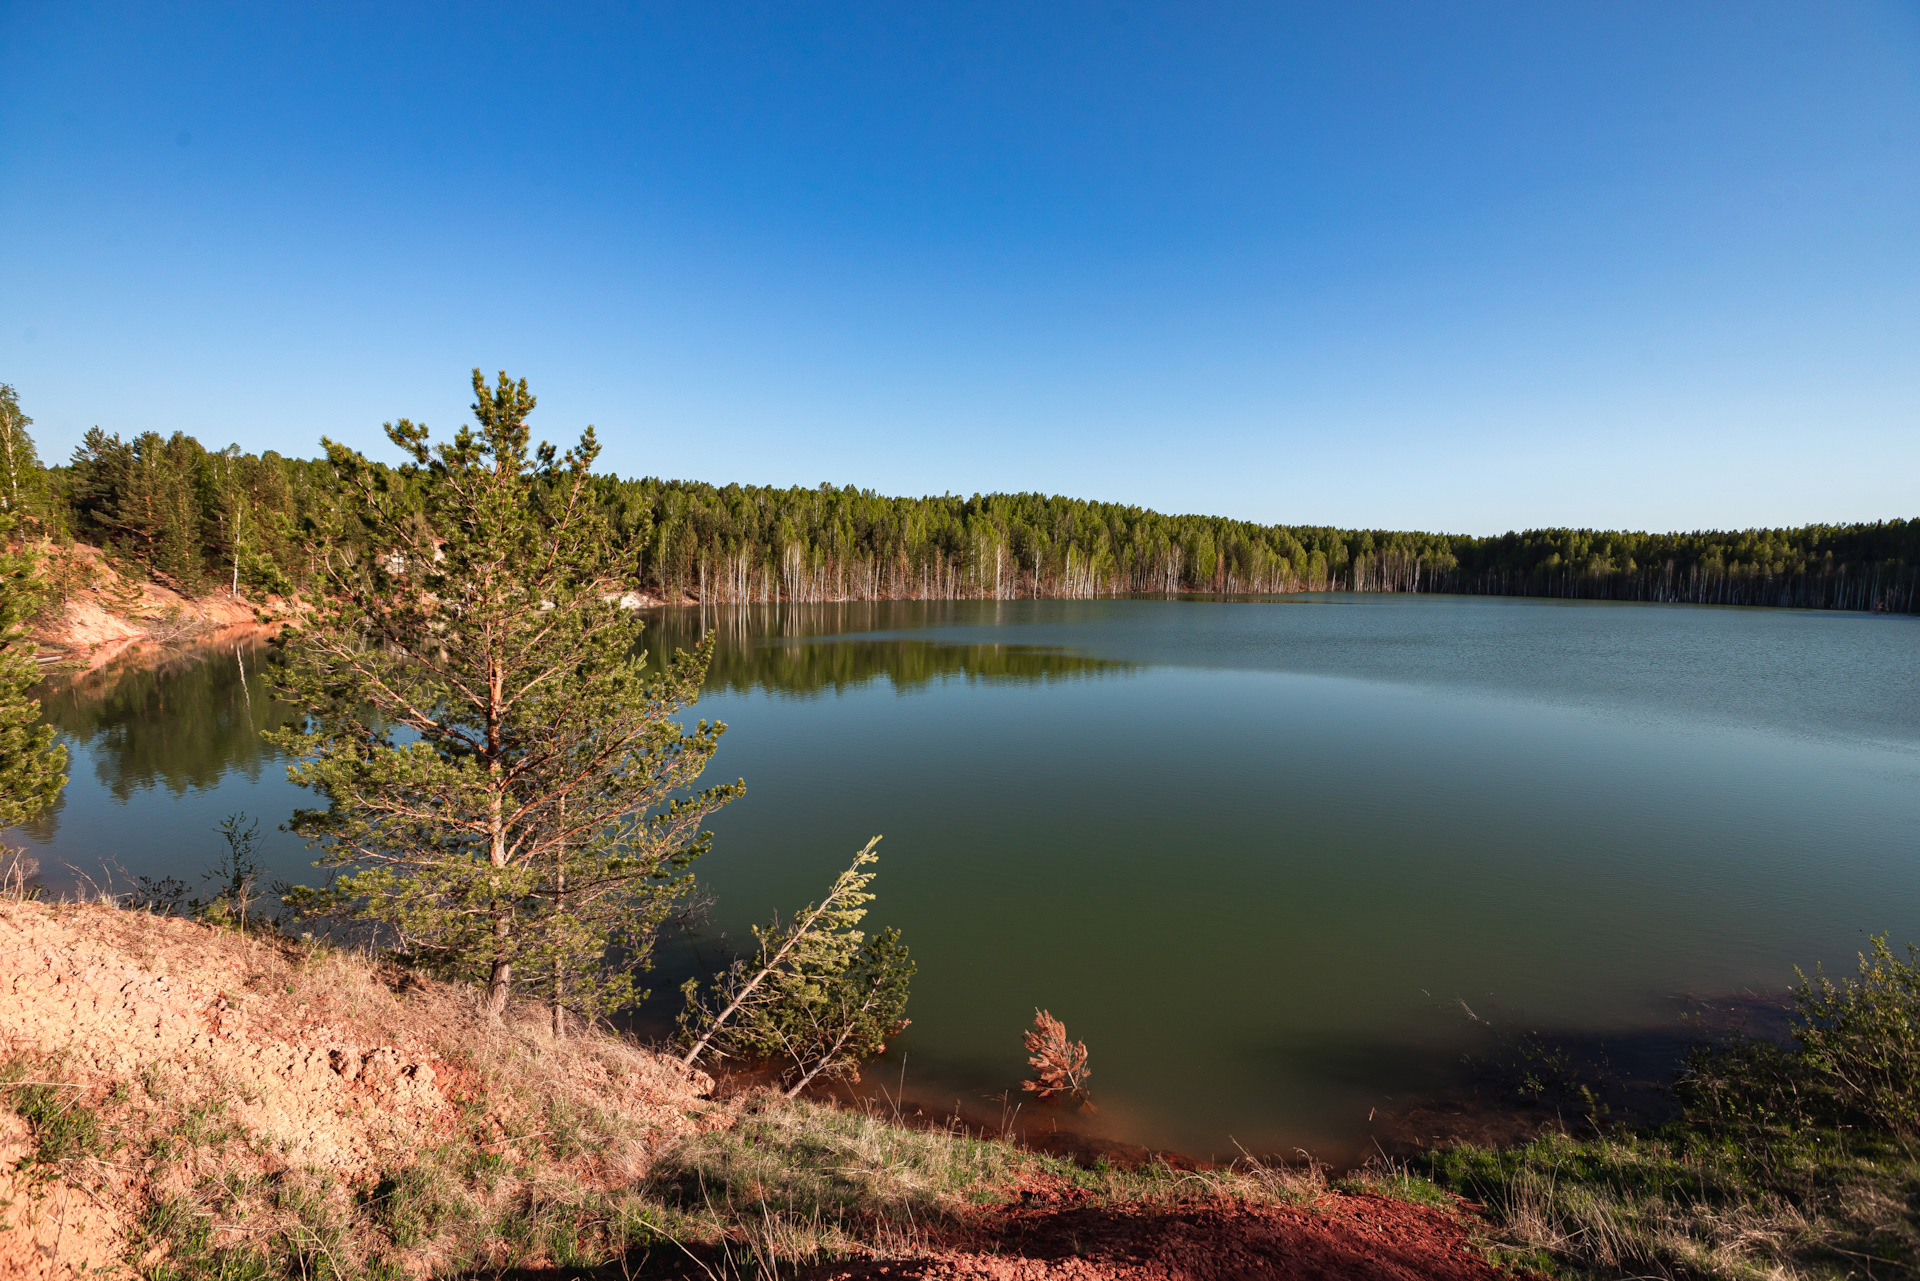 фото озеро апрелька кемеровская область